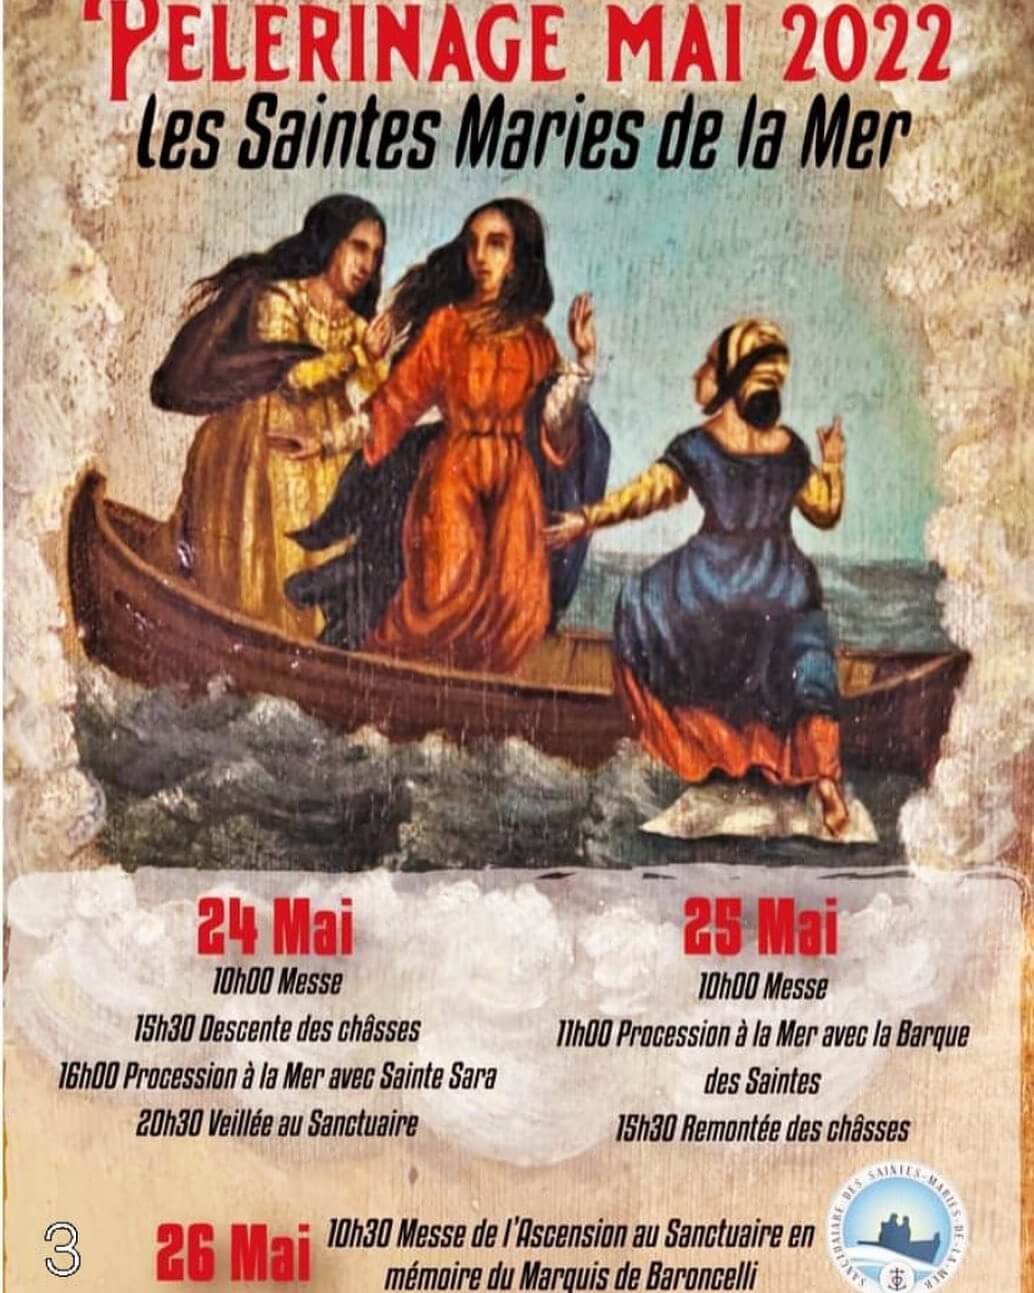 Affiche de la Fête des Gitans 2022 aux Saintes Maries de la mer